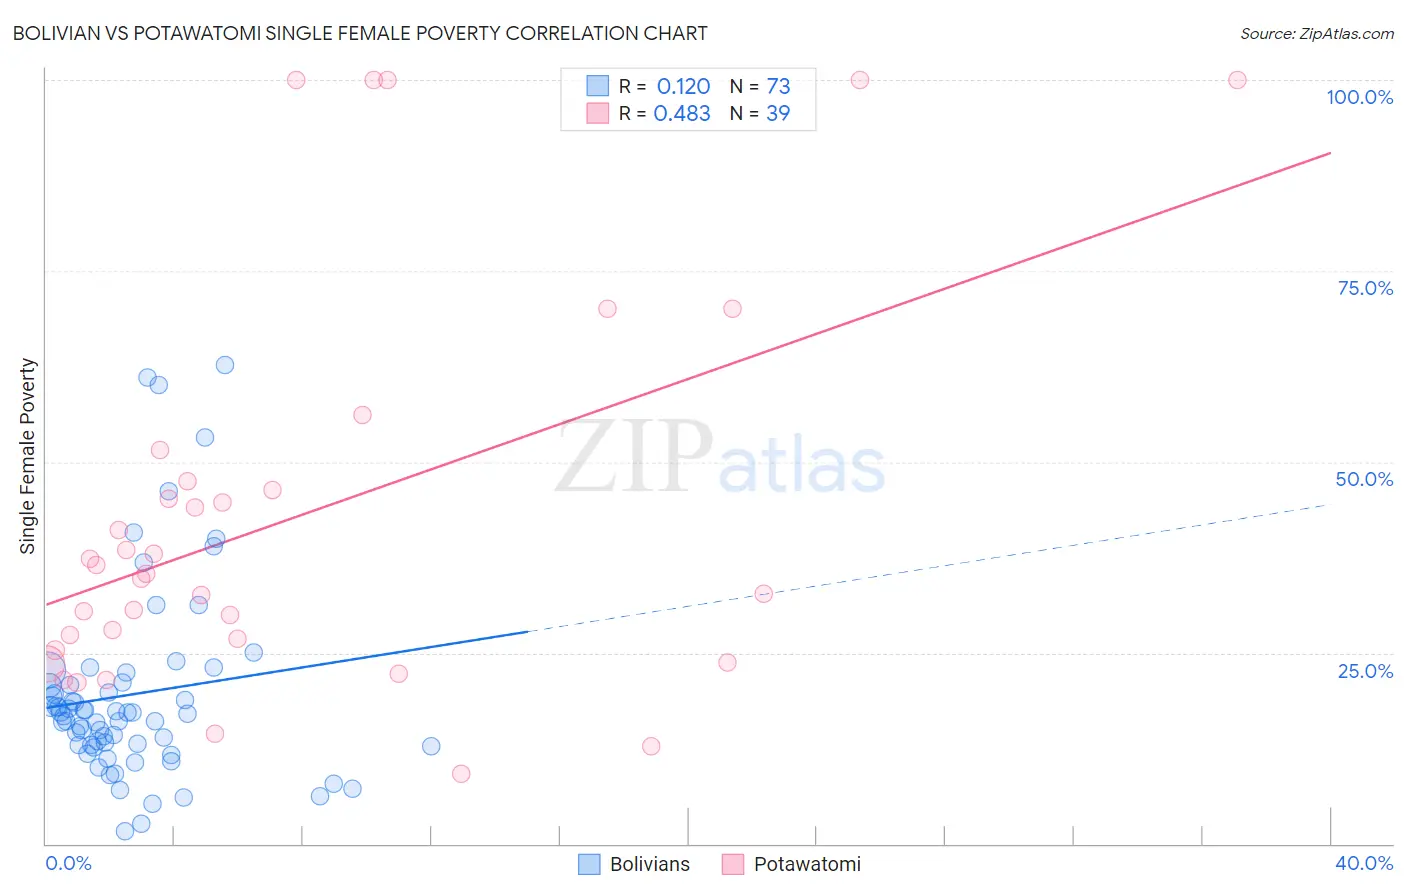 Bolivian vs Potawatomi Single Female Poverty